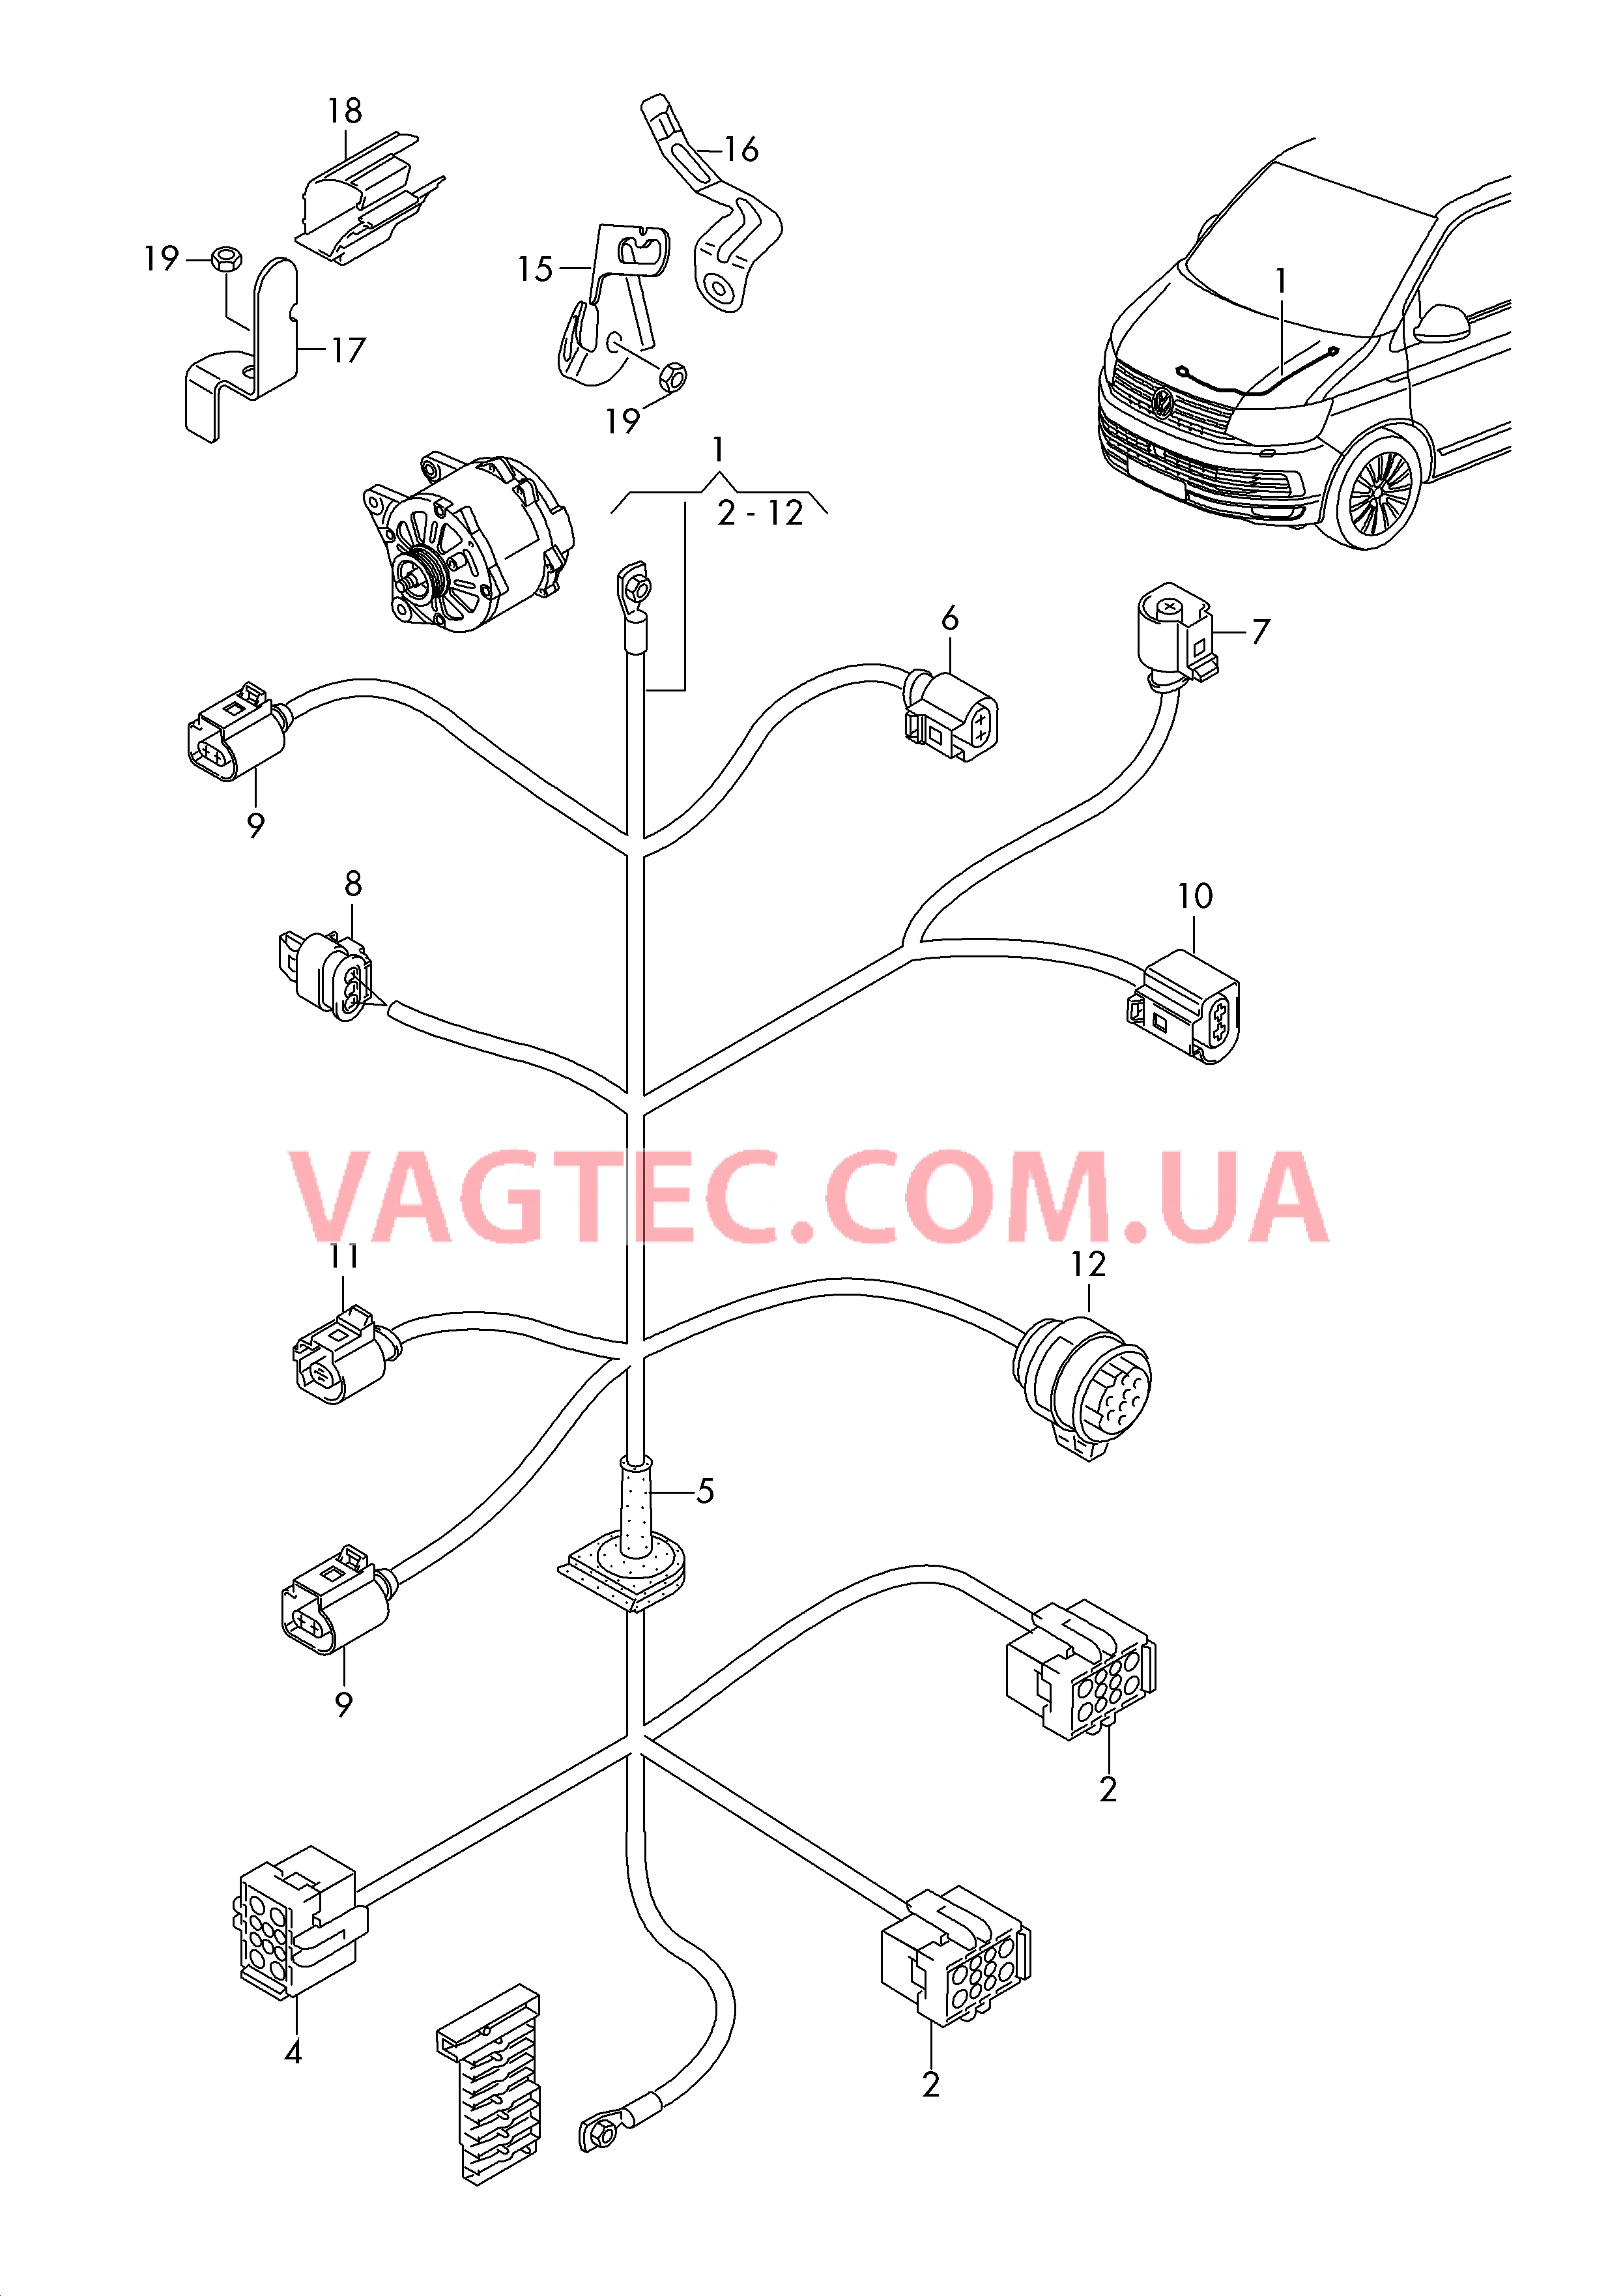 Жгут проводов для двигателя Генератор  для VOLKSWAGEN Transporter 2017-1